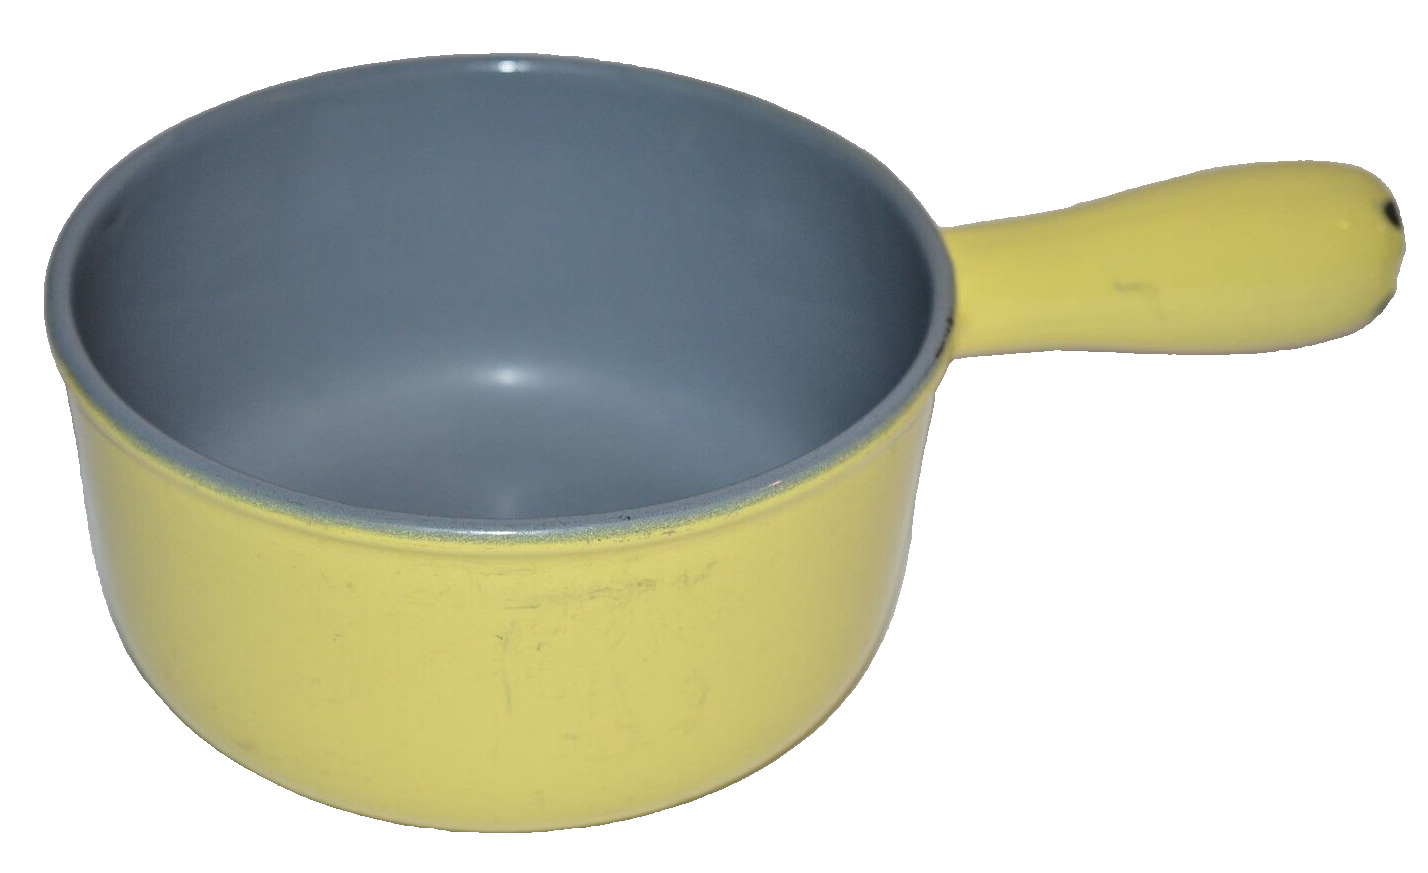 Vtg Descoware 7-A 14 A FE Saucepan Yellow Cast Iron Enamel Belgium Small Pan